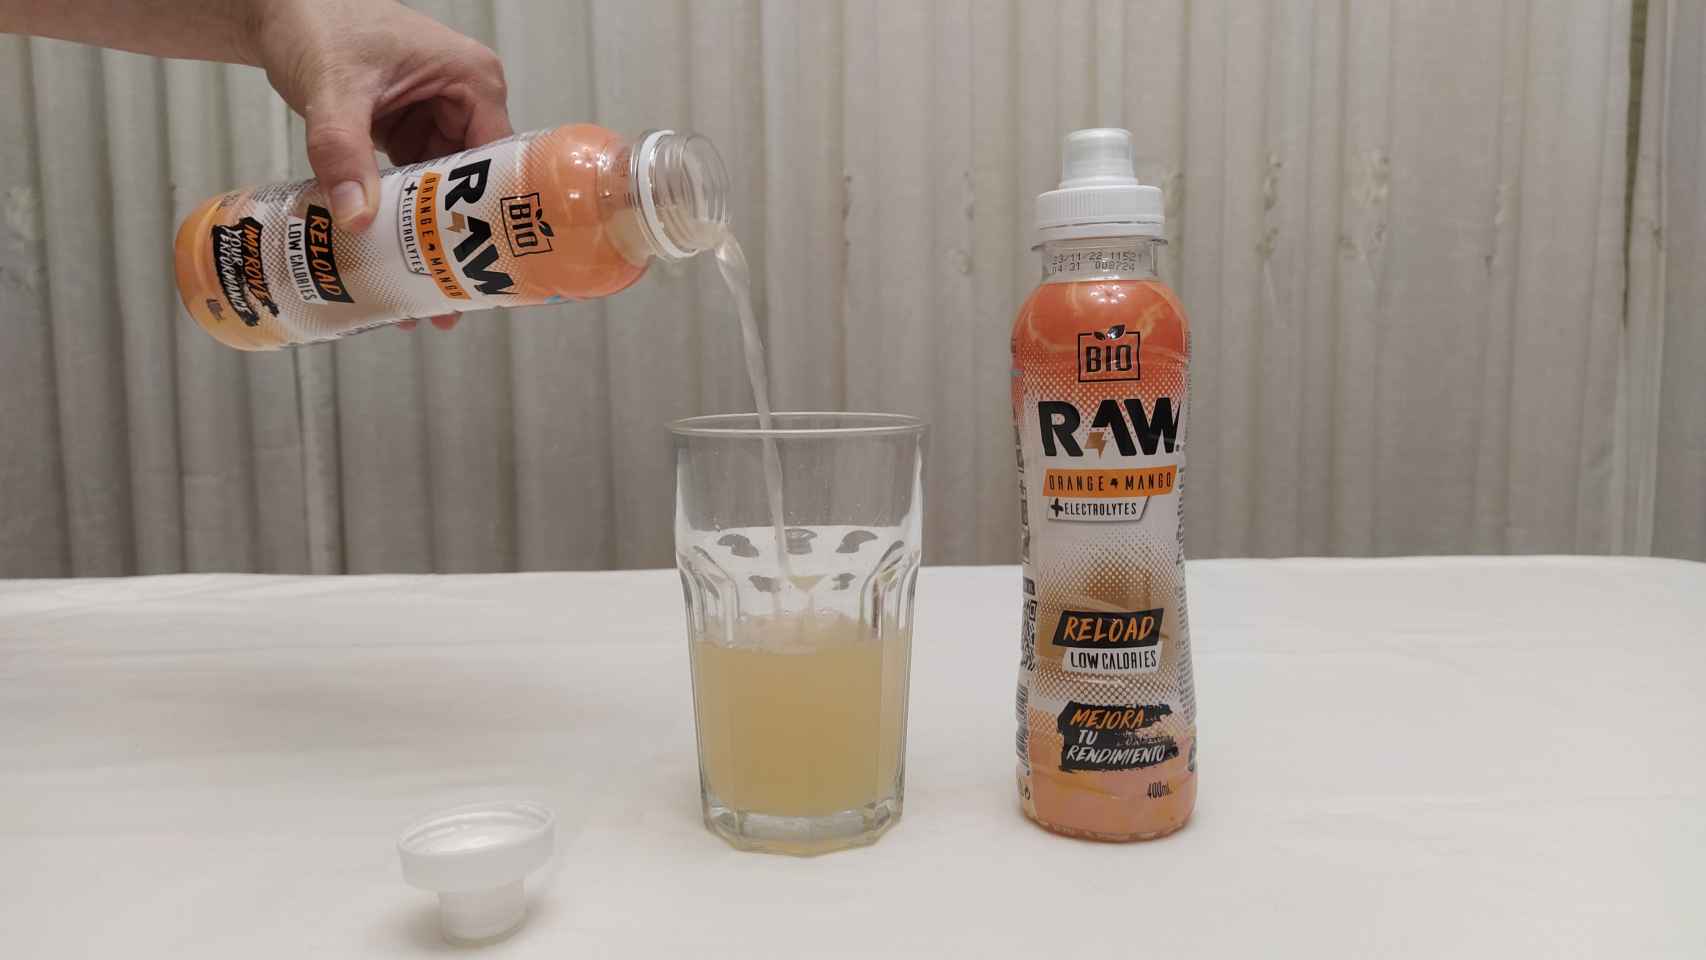 Servimos la bebida de naranja y mango de Raw para valorarla.